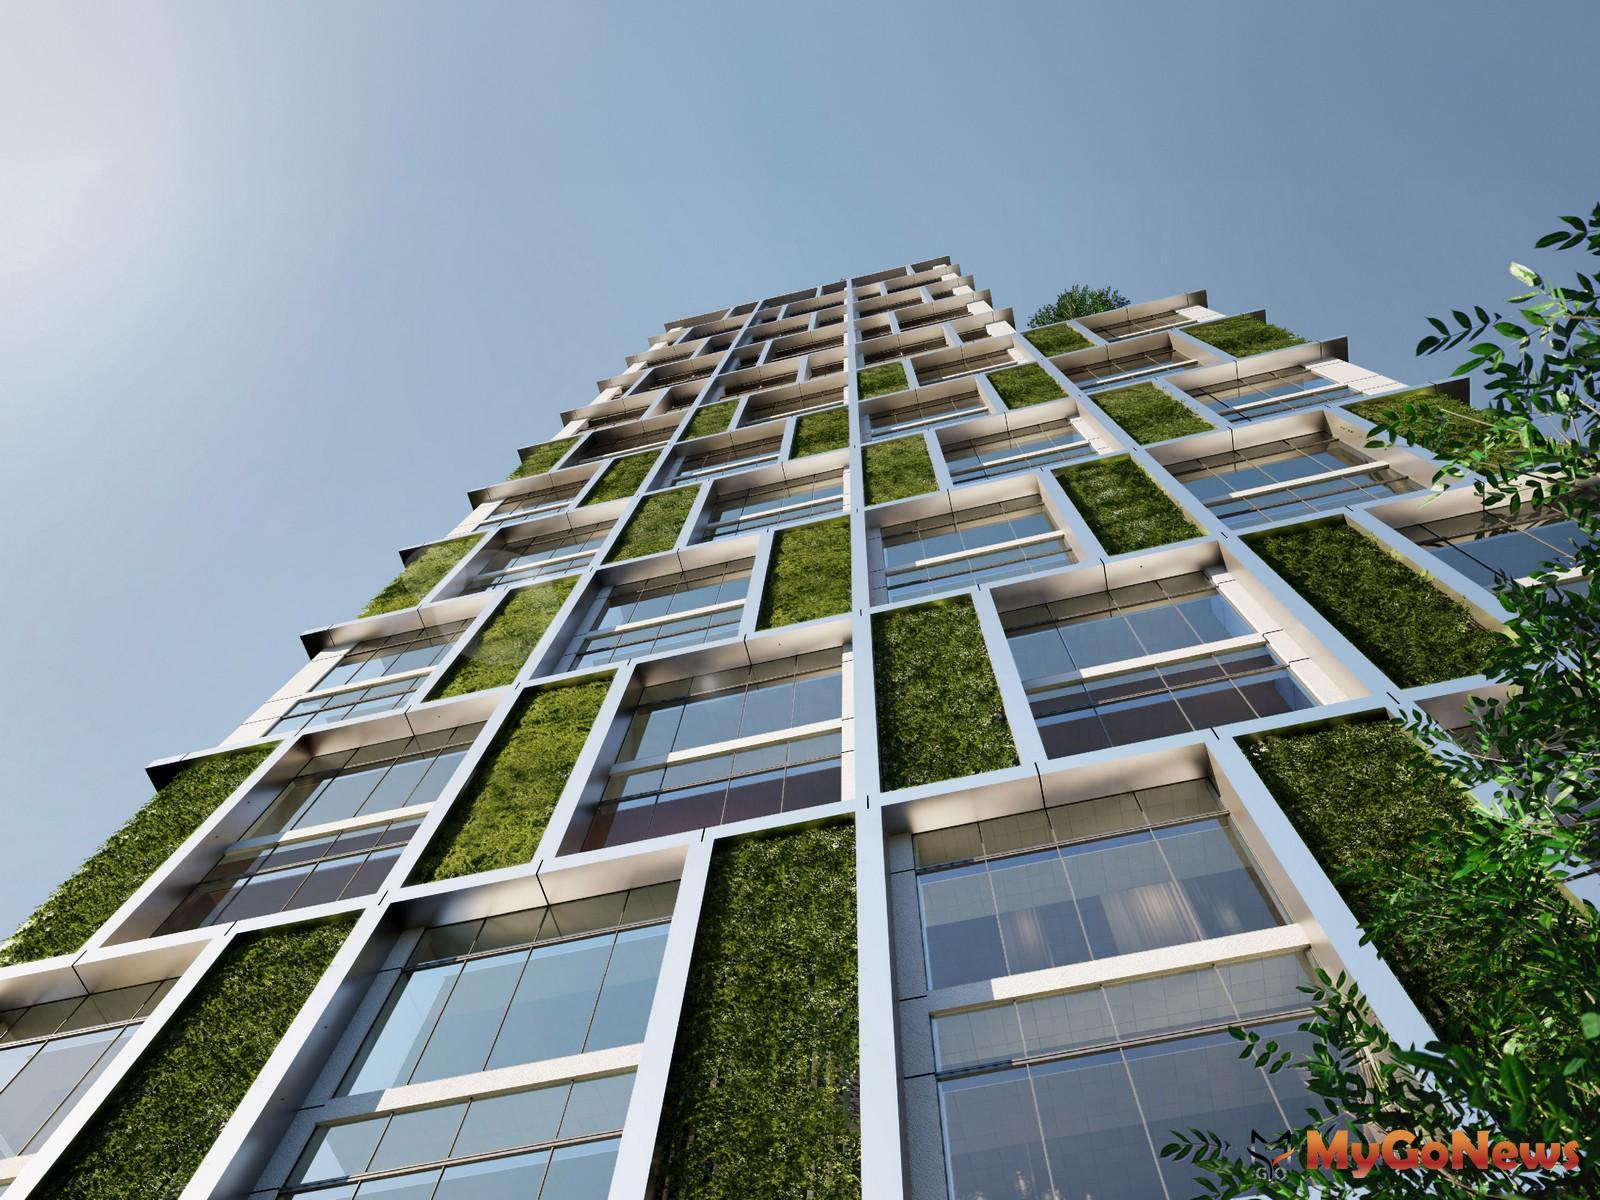 「富邦藝庭」樓高27層，採取「國際綠奢精品宅」規劃，據悉，中間樓層成交單價約每坪220-230萬元之間。(圖為建築外觀3D模擬示意圖)  MyGoNews房地產新聞 專題報導